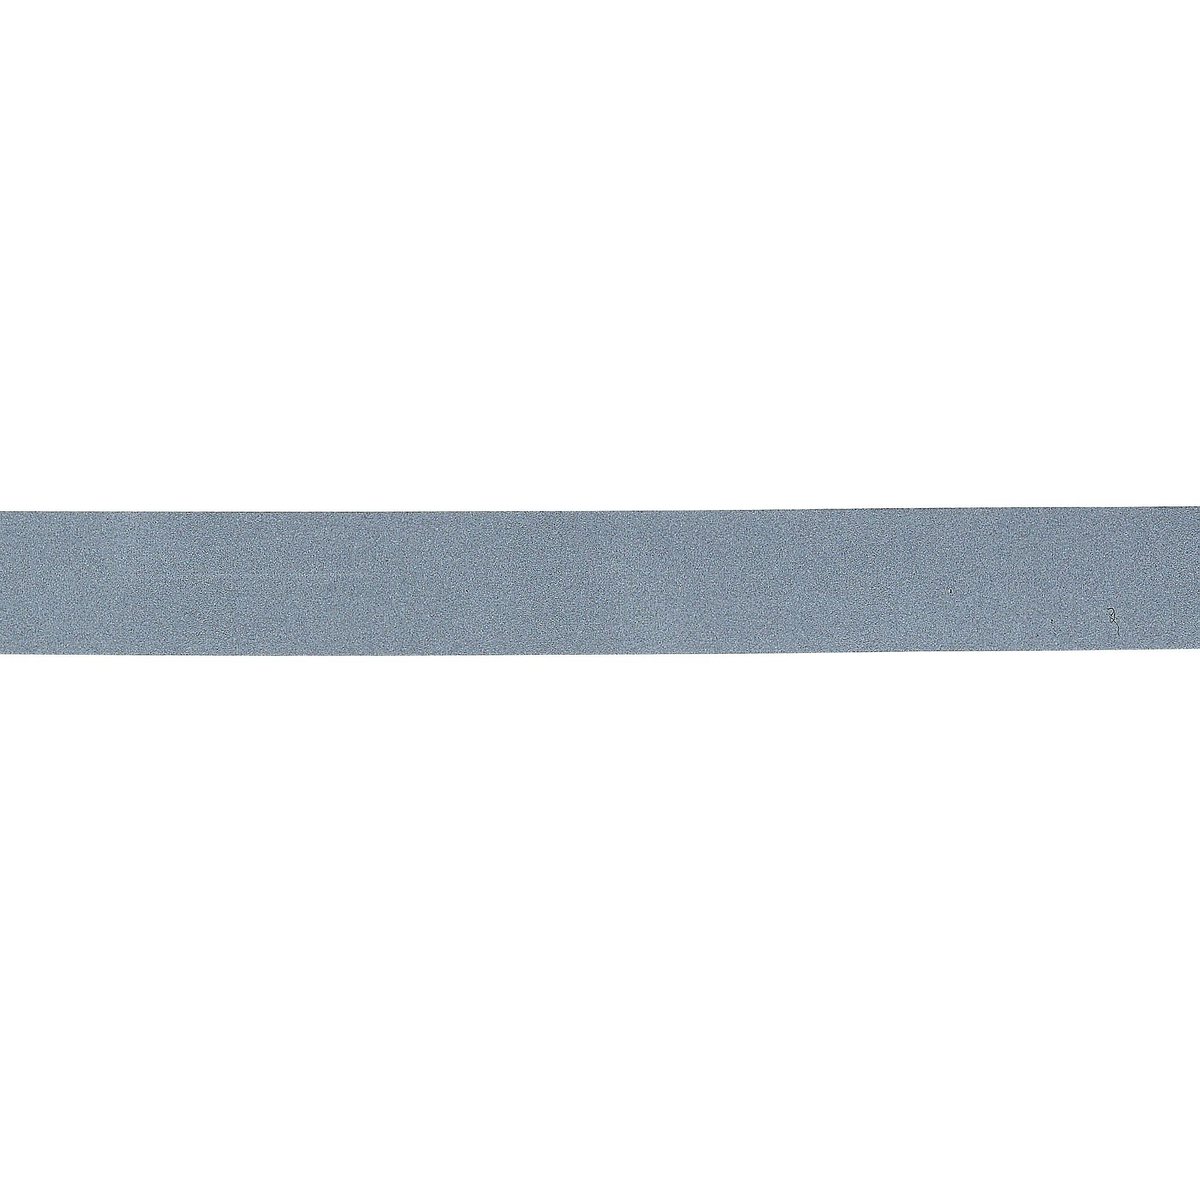 selvklebende refleks bånd 25mm